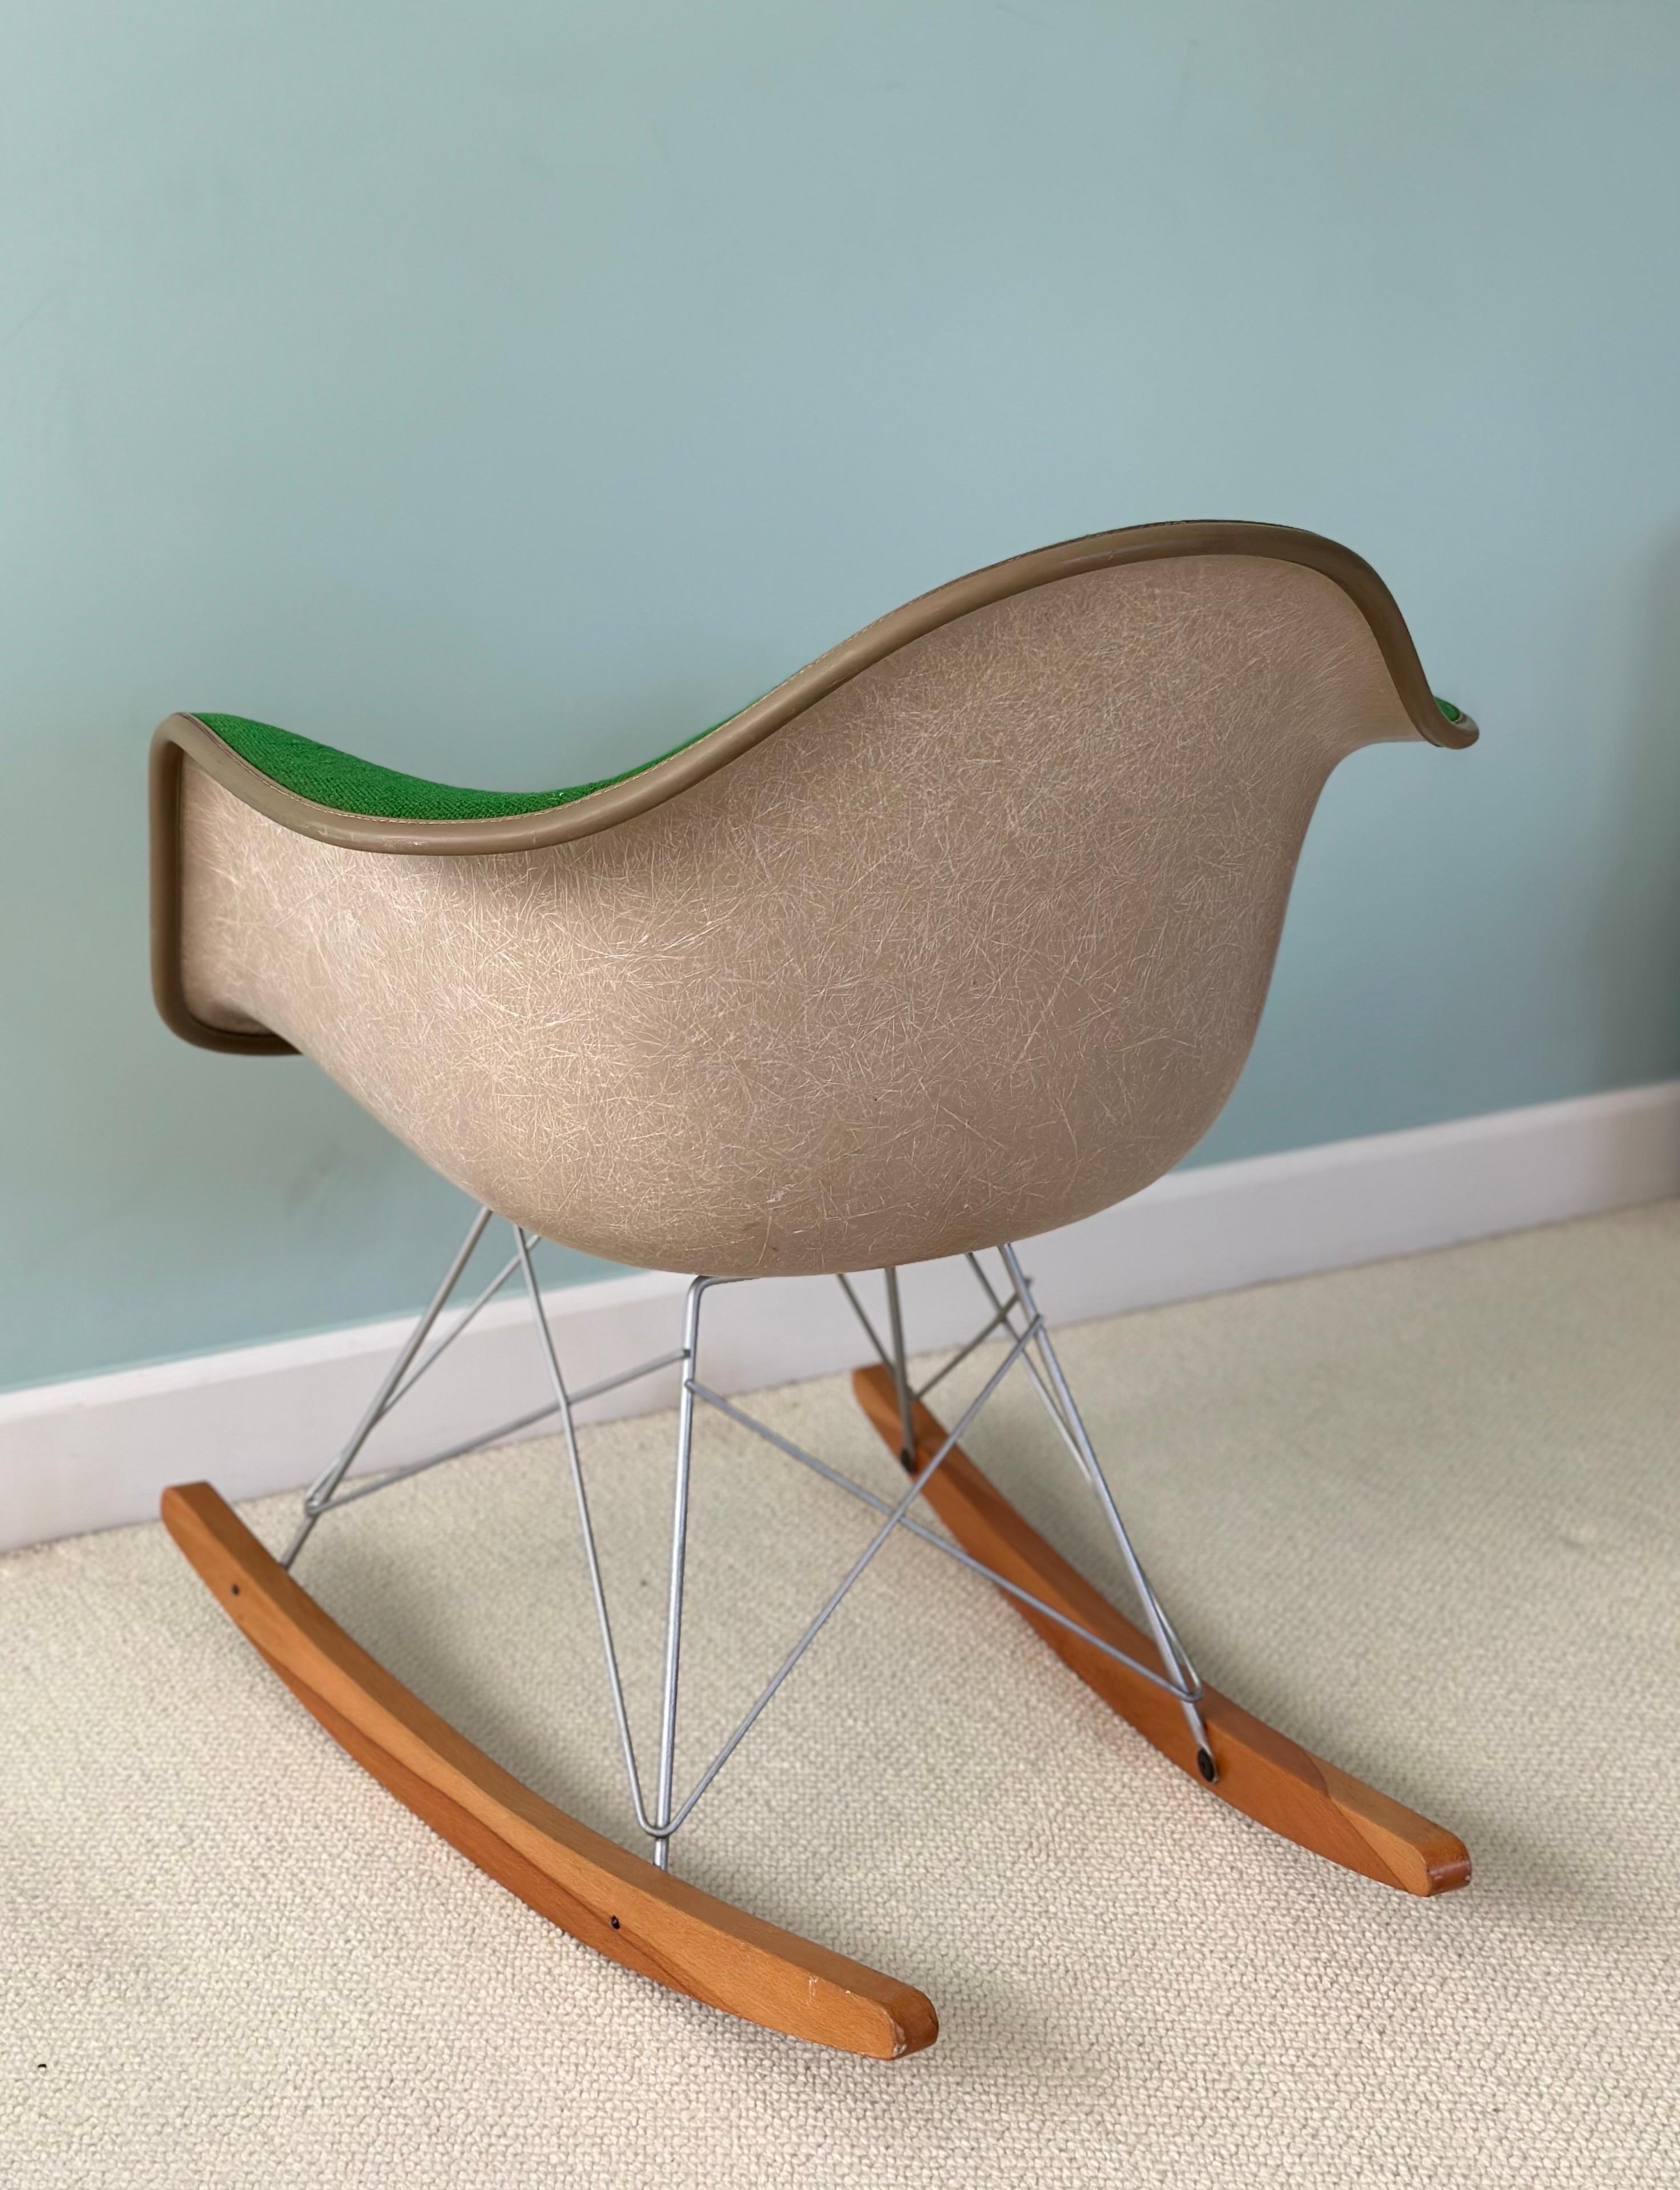 1970s RAR Eames for Herman Miller Fiberglass and Green Upholstery Rocker Chair  For Sale 1